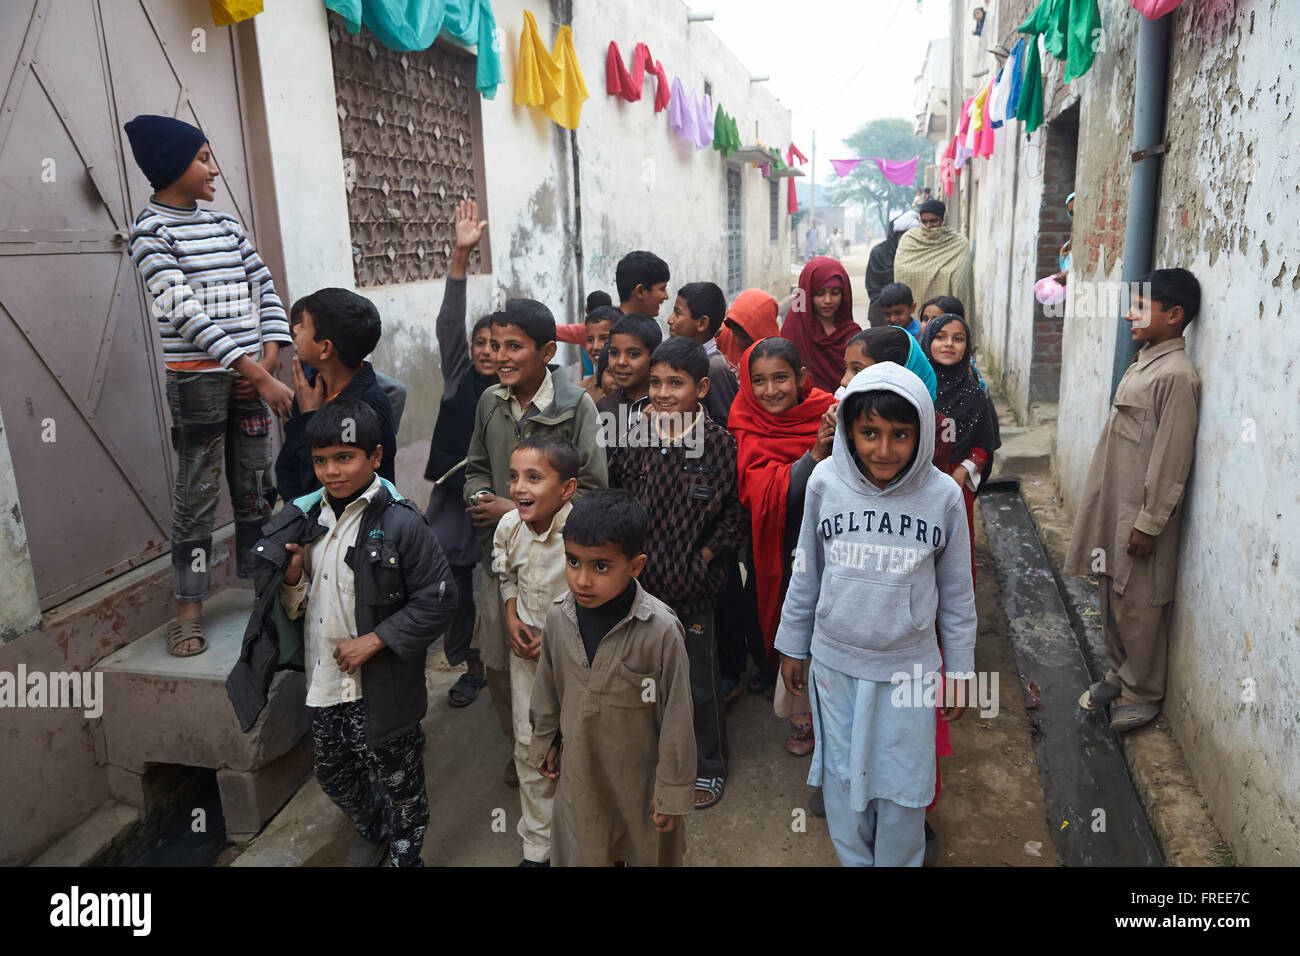 Les enfants dans la rue, Mahey, Pakistan Banque D'Images